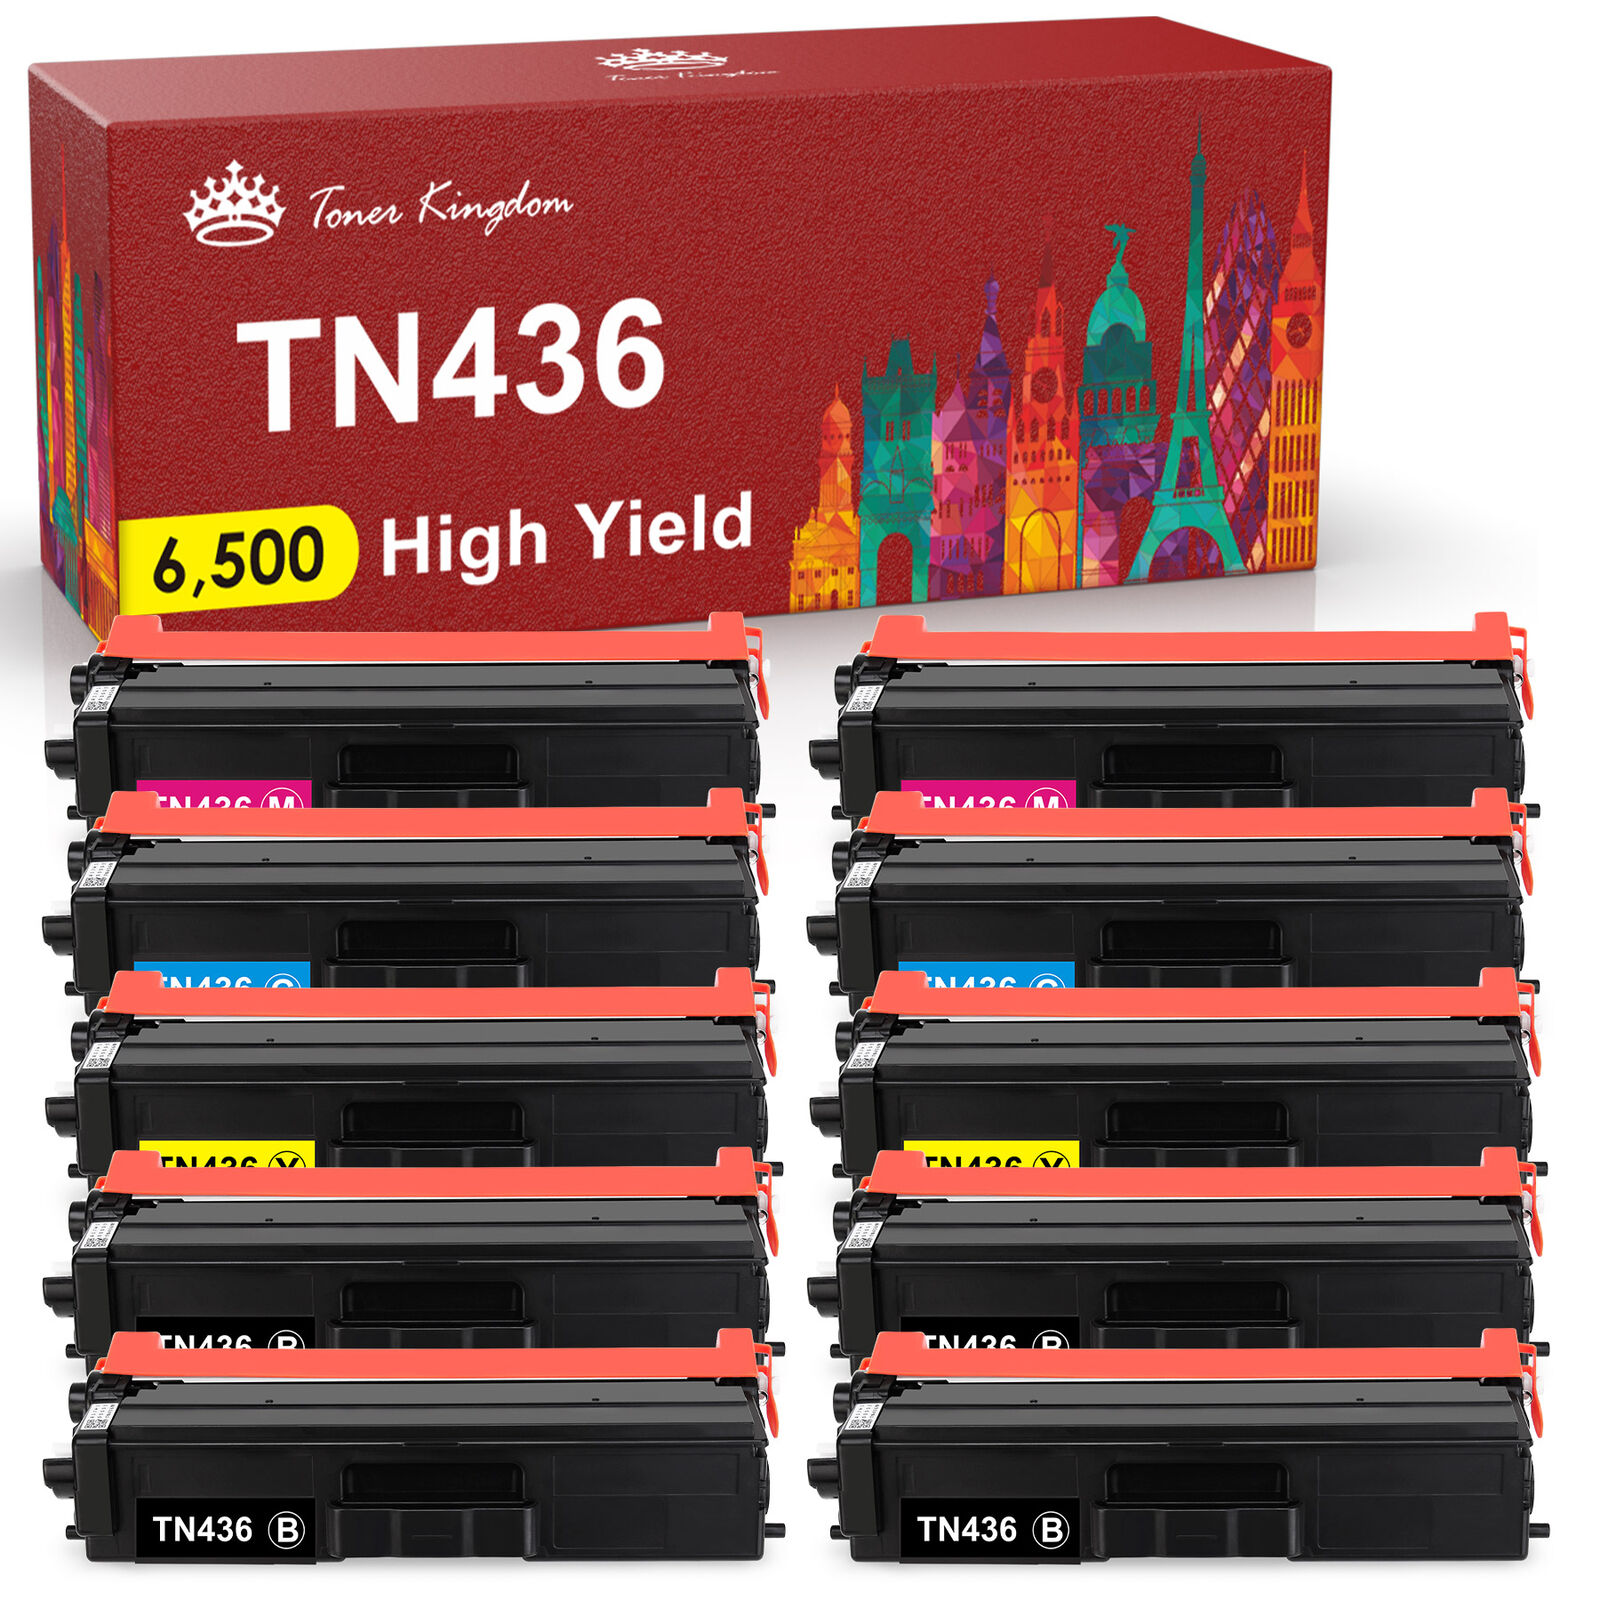 10x TN436 Toner Cartridge TN433 For Brother HL-L8360CDW HL-L8360CDWT HL-L9310CDW